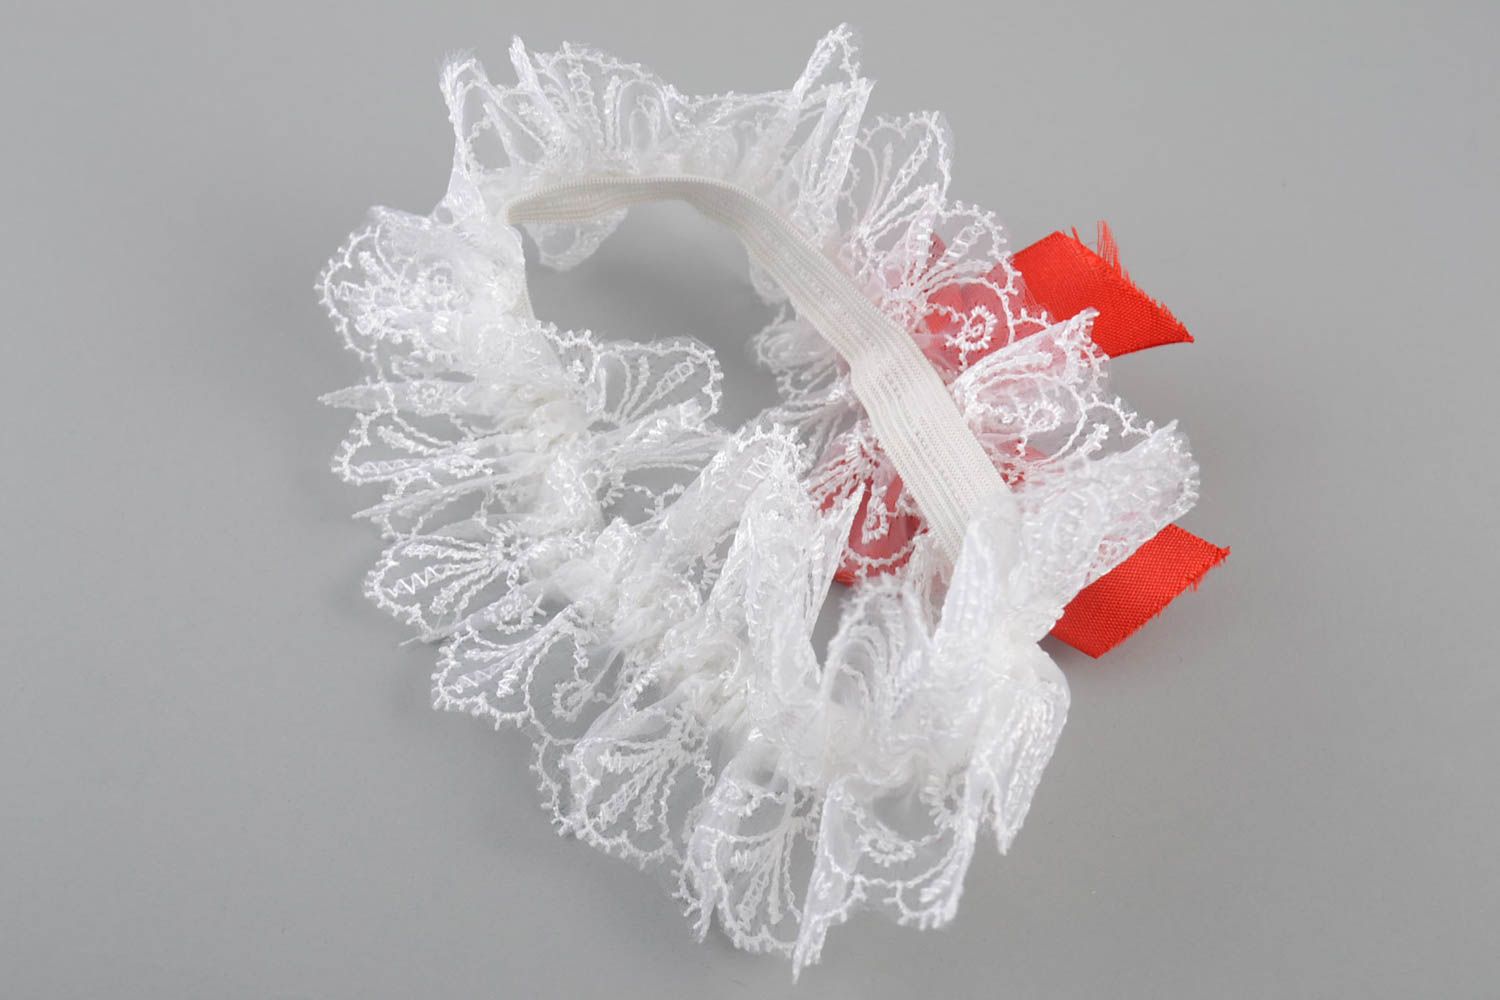 Jarretière de mariée en dentelle guipure blanche faite main avec noeud en ruban photo 4